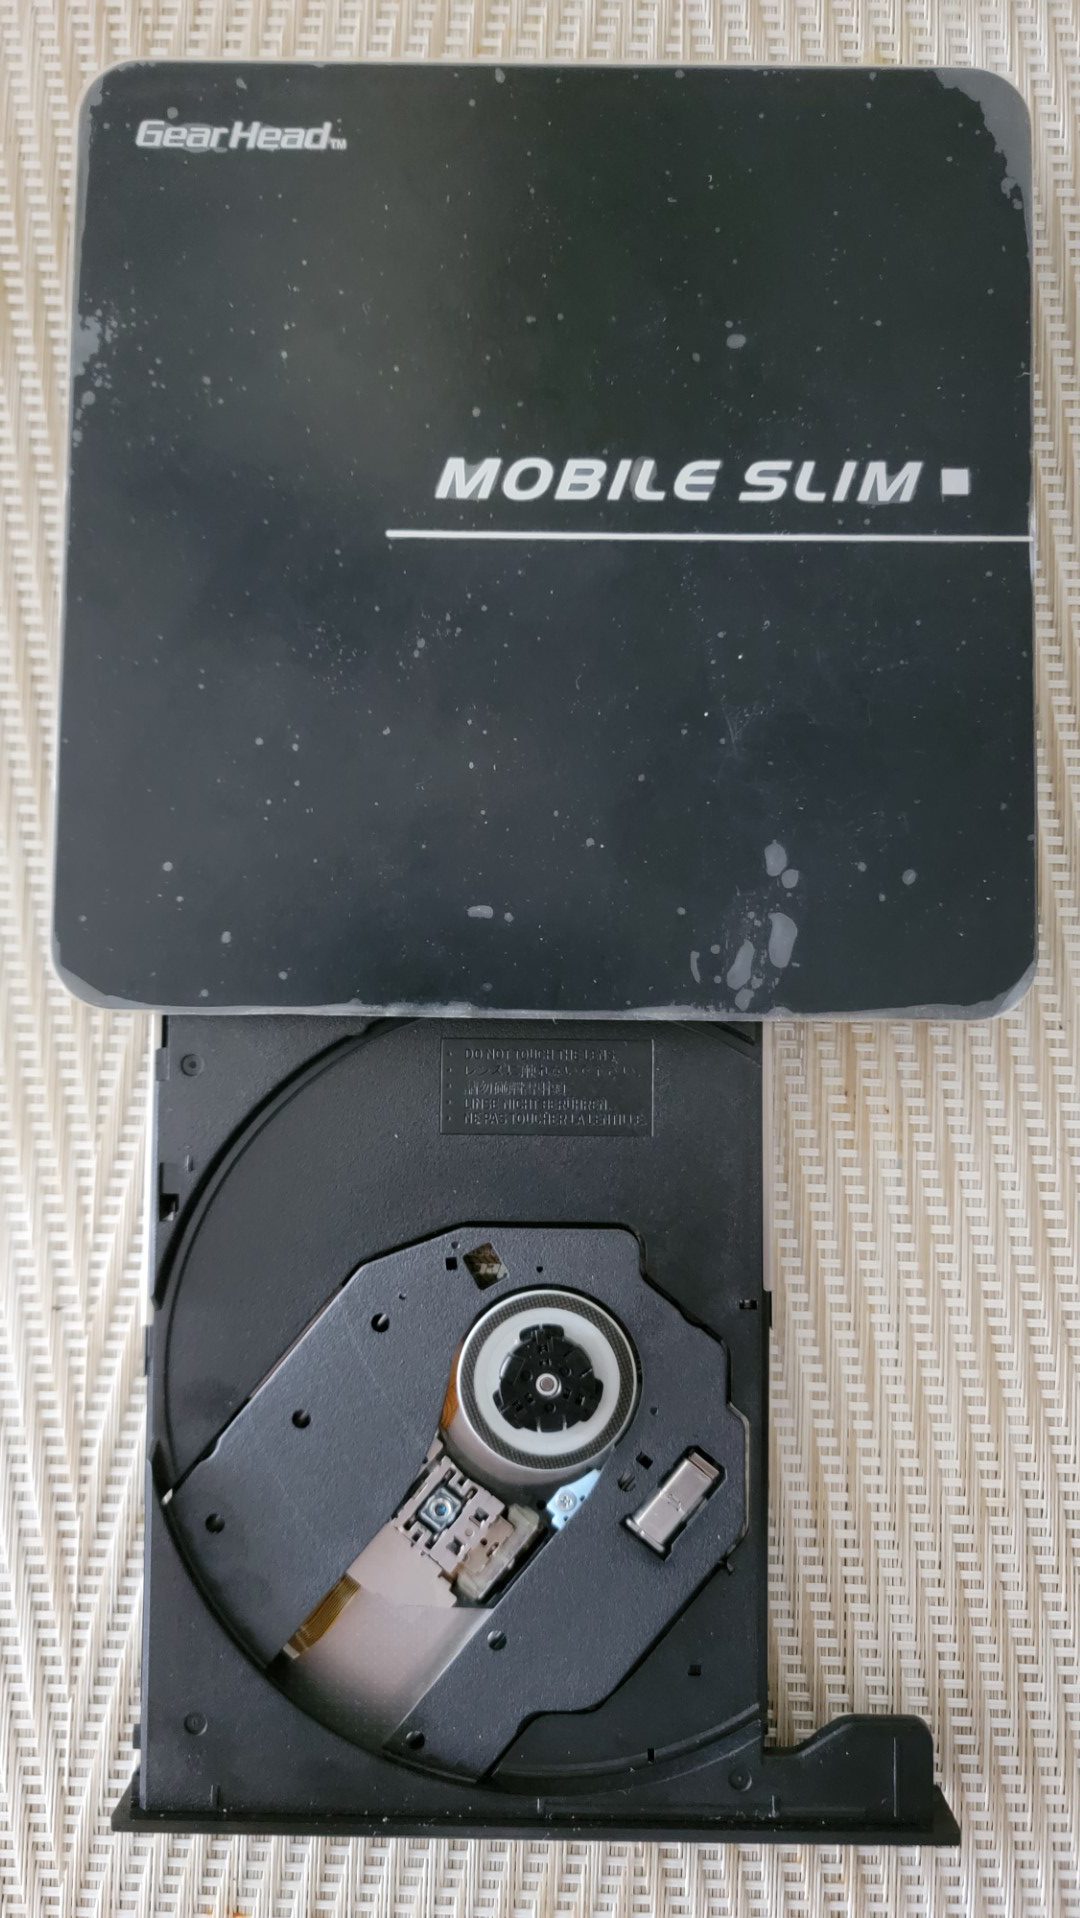 Gear Head Triple Format Mobile Slim External DVD Drive 8